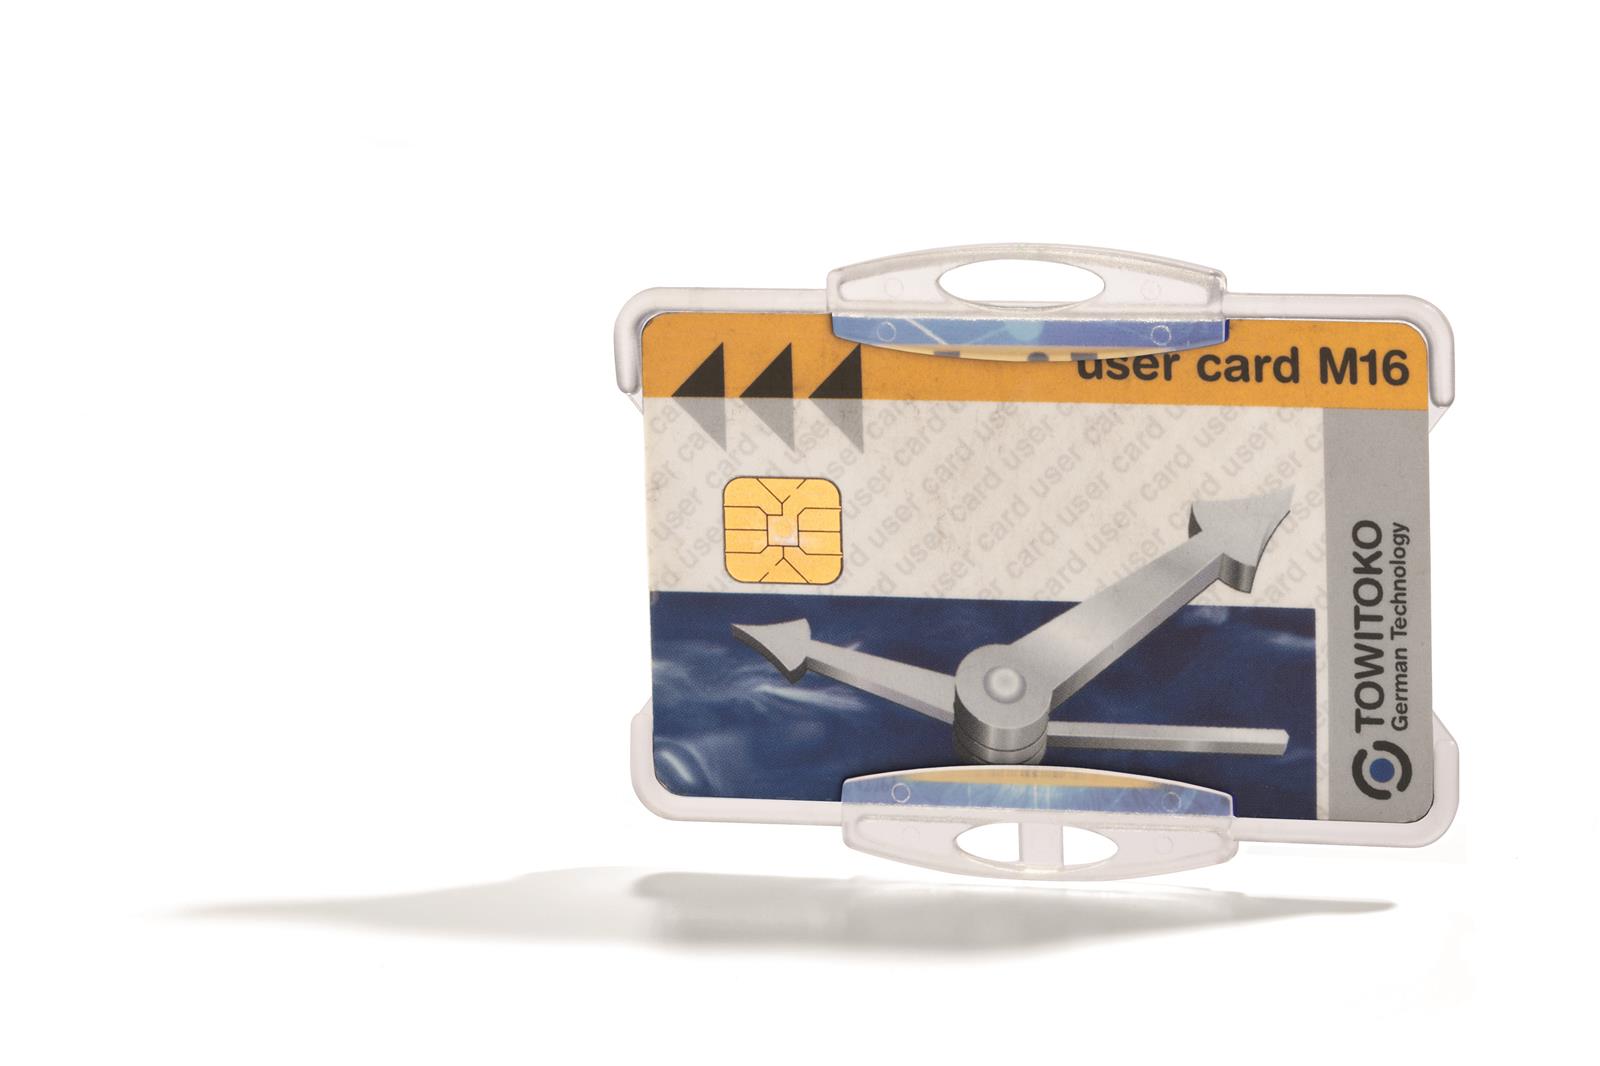 Ausweishalter für 1 Karte, 1 Pack à 10 ST